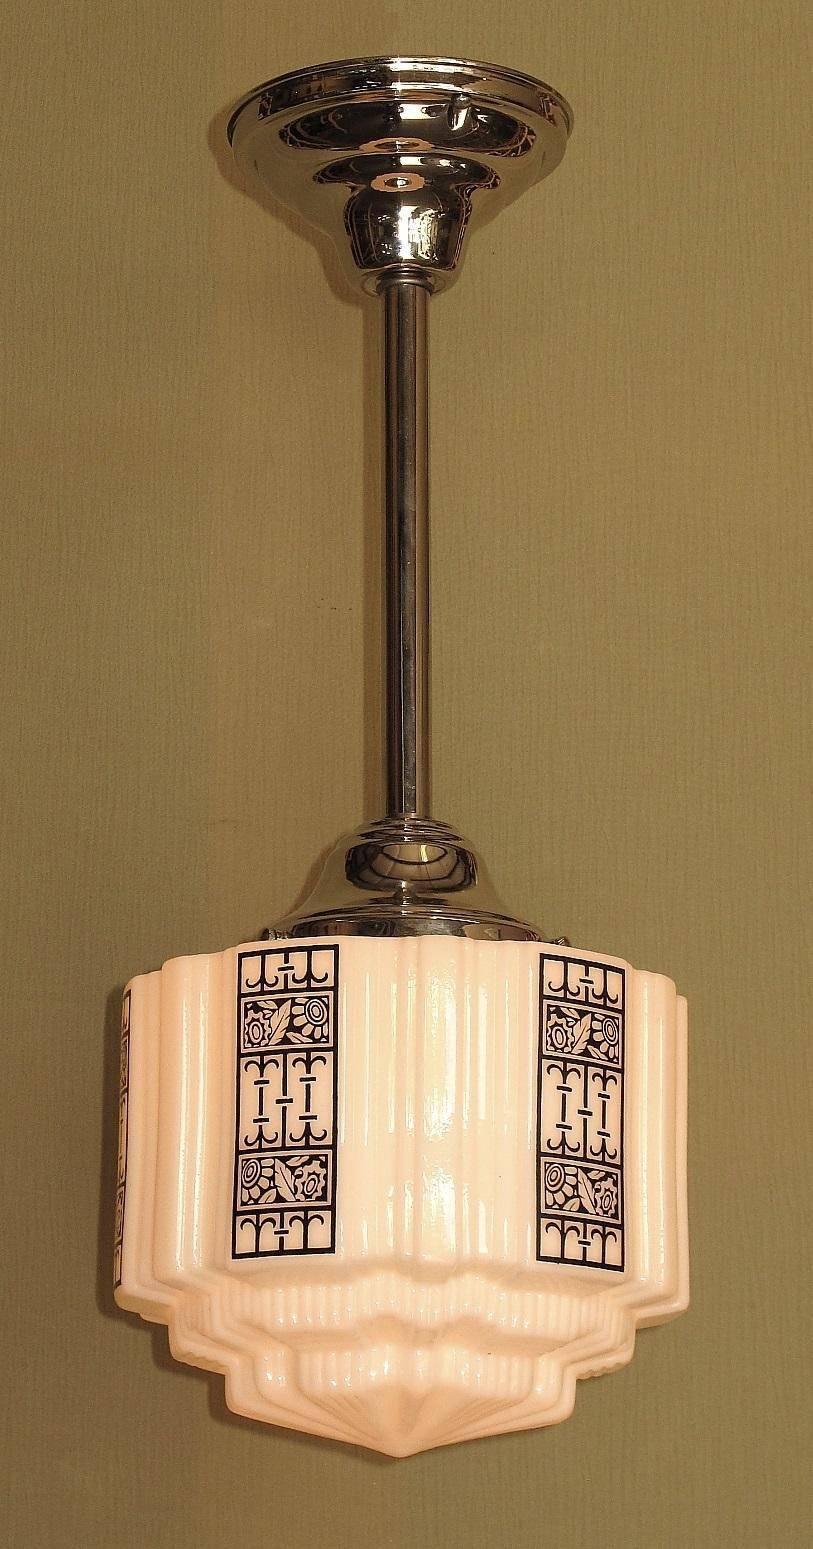 1920s light fixtures